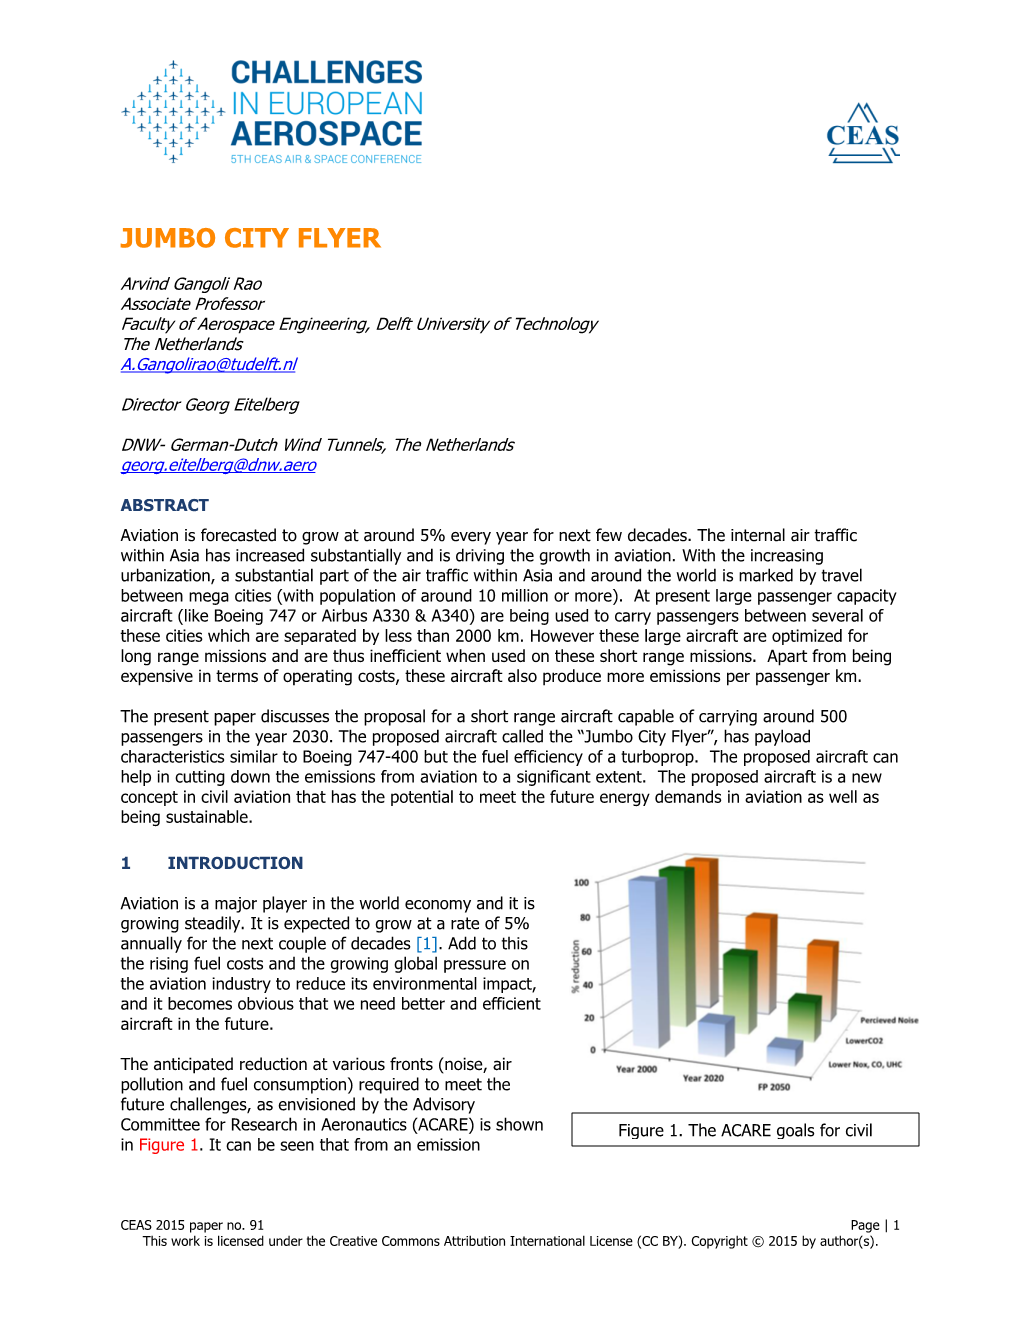 Jumbo City Flyer